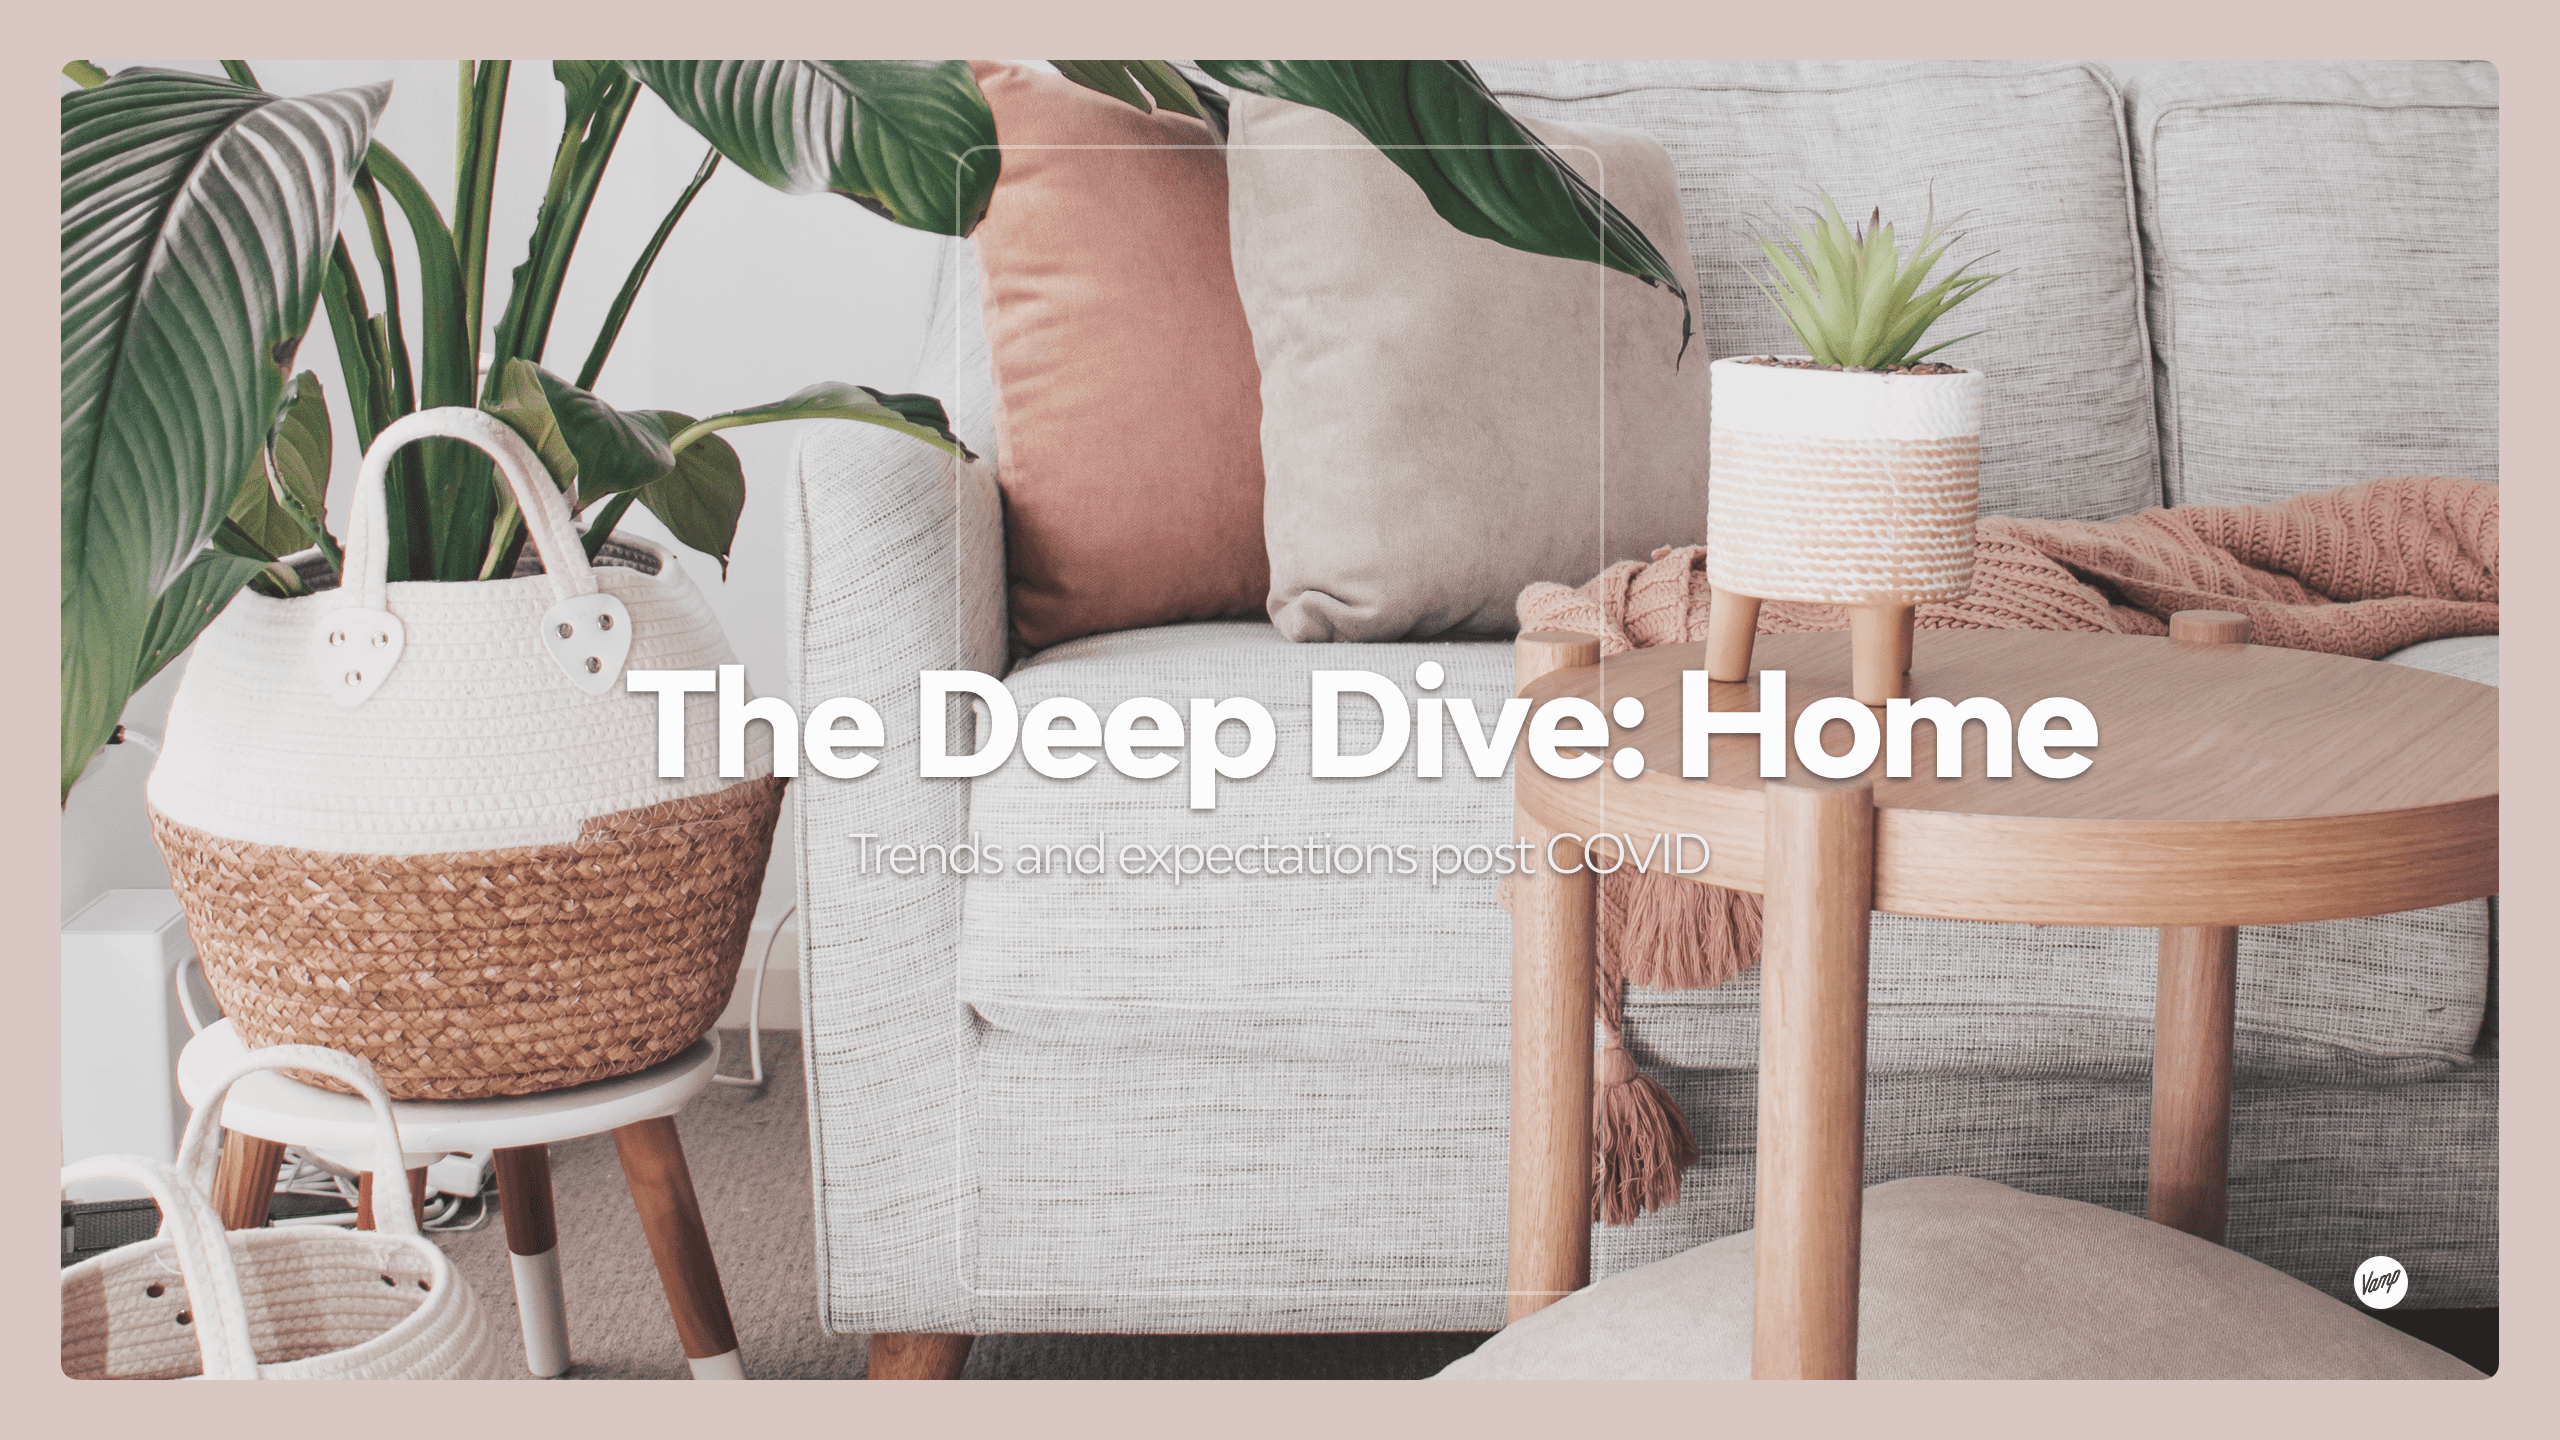 Download Vamps free Deep Dive report on homewares trends